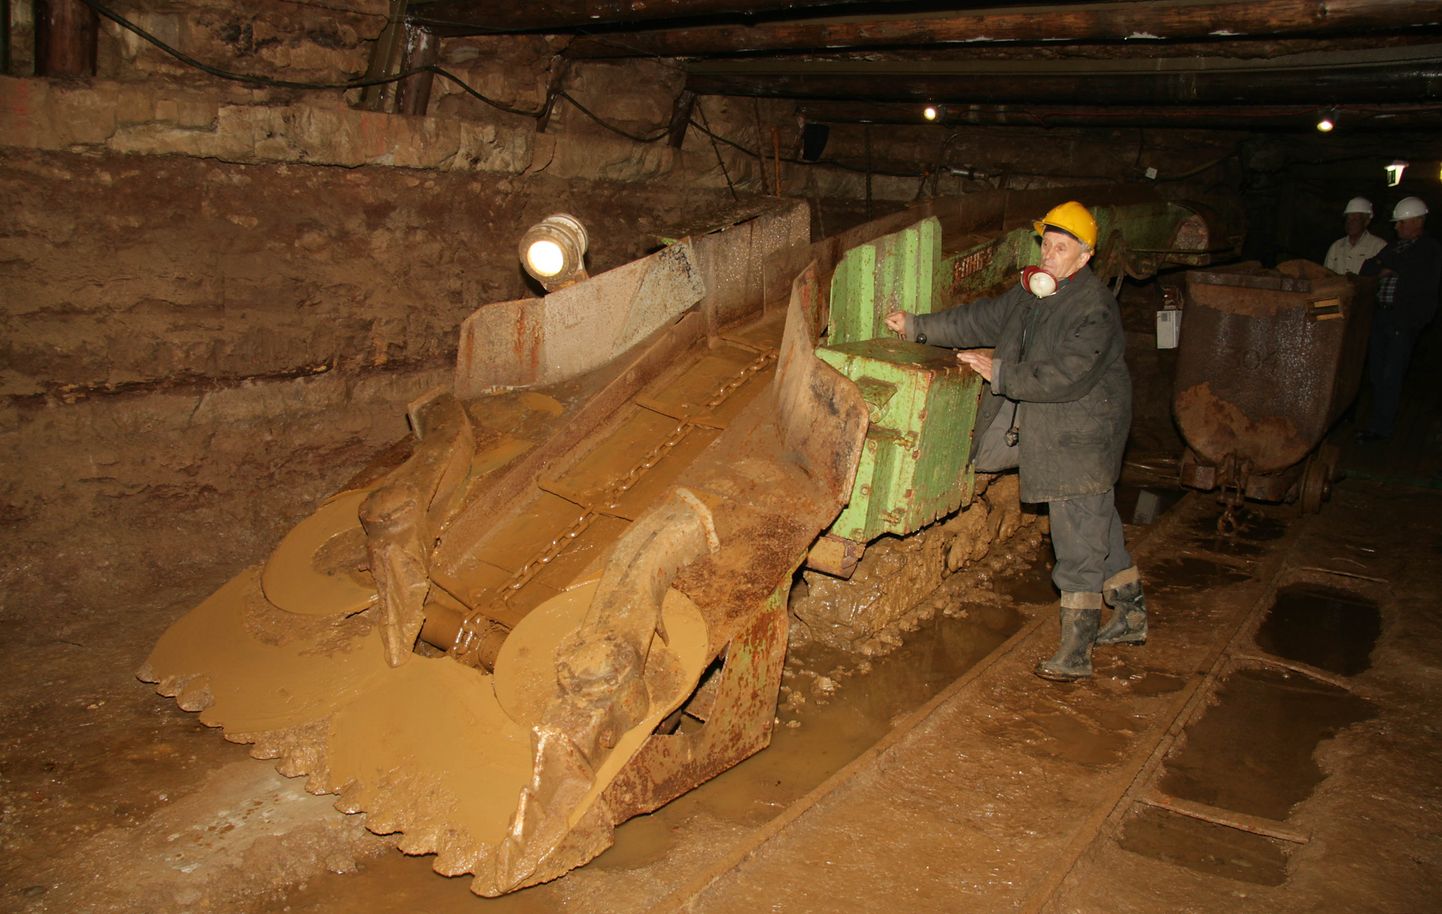 Kaevandusmuuseumi väärtus on vanad masinad, mis paraku pidevalt remonti vajavad.